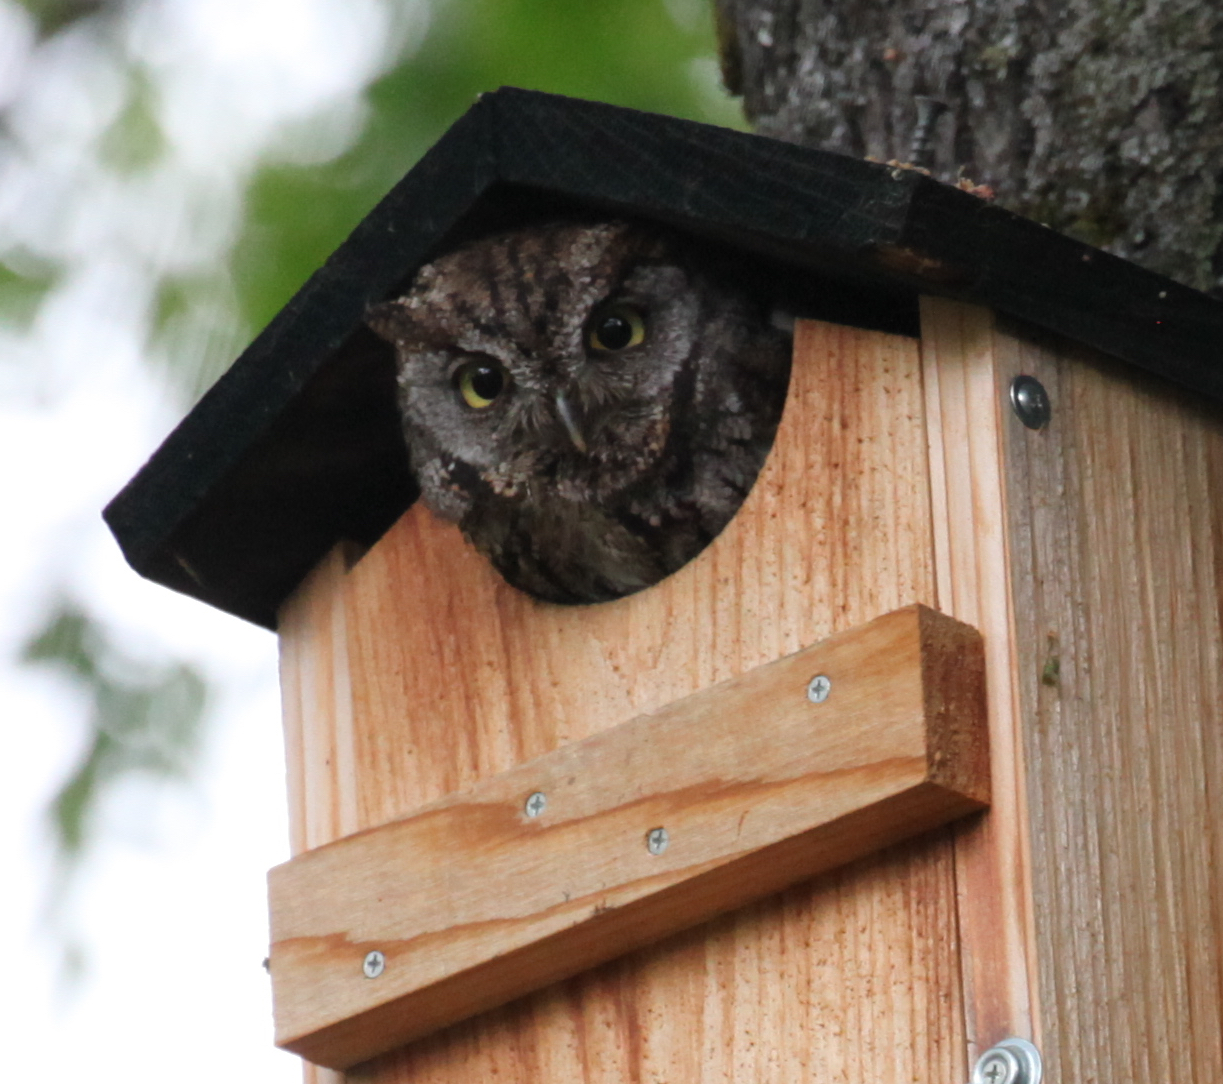 Owl in box - Ashland Trails